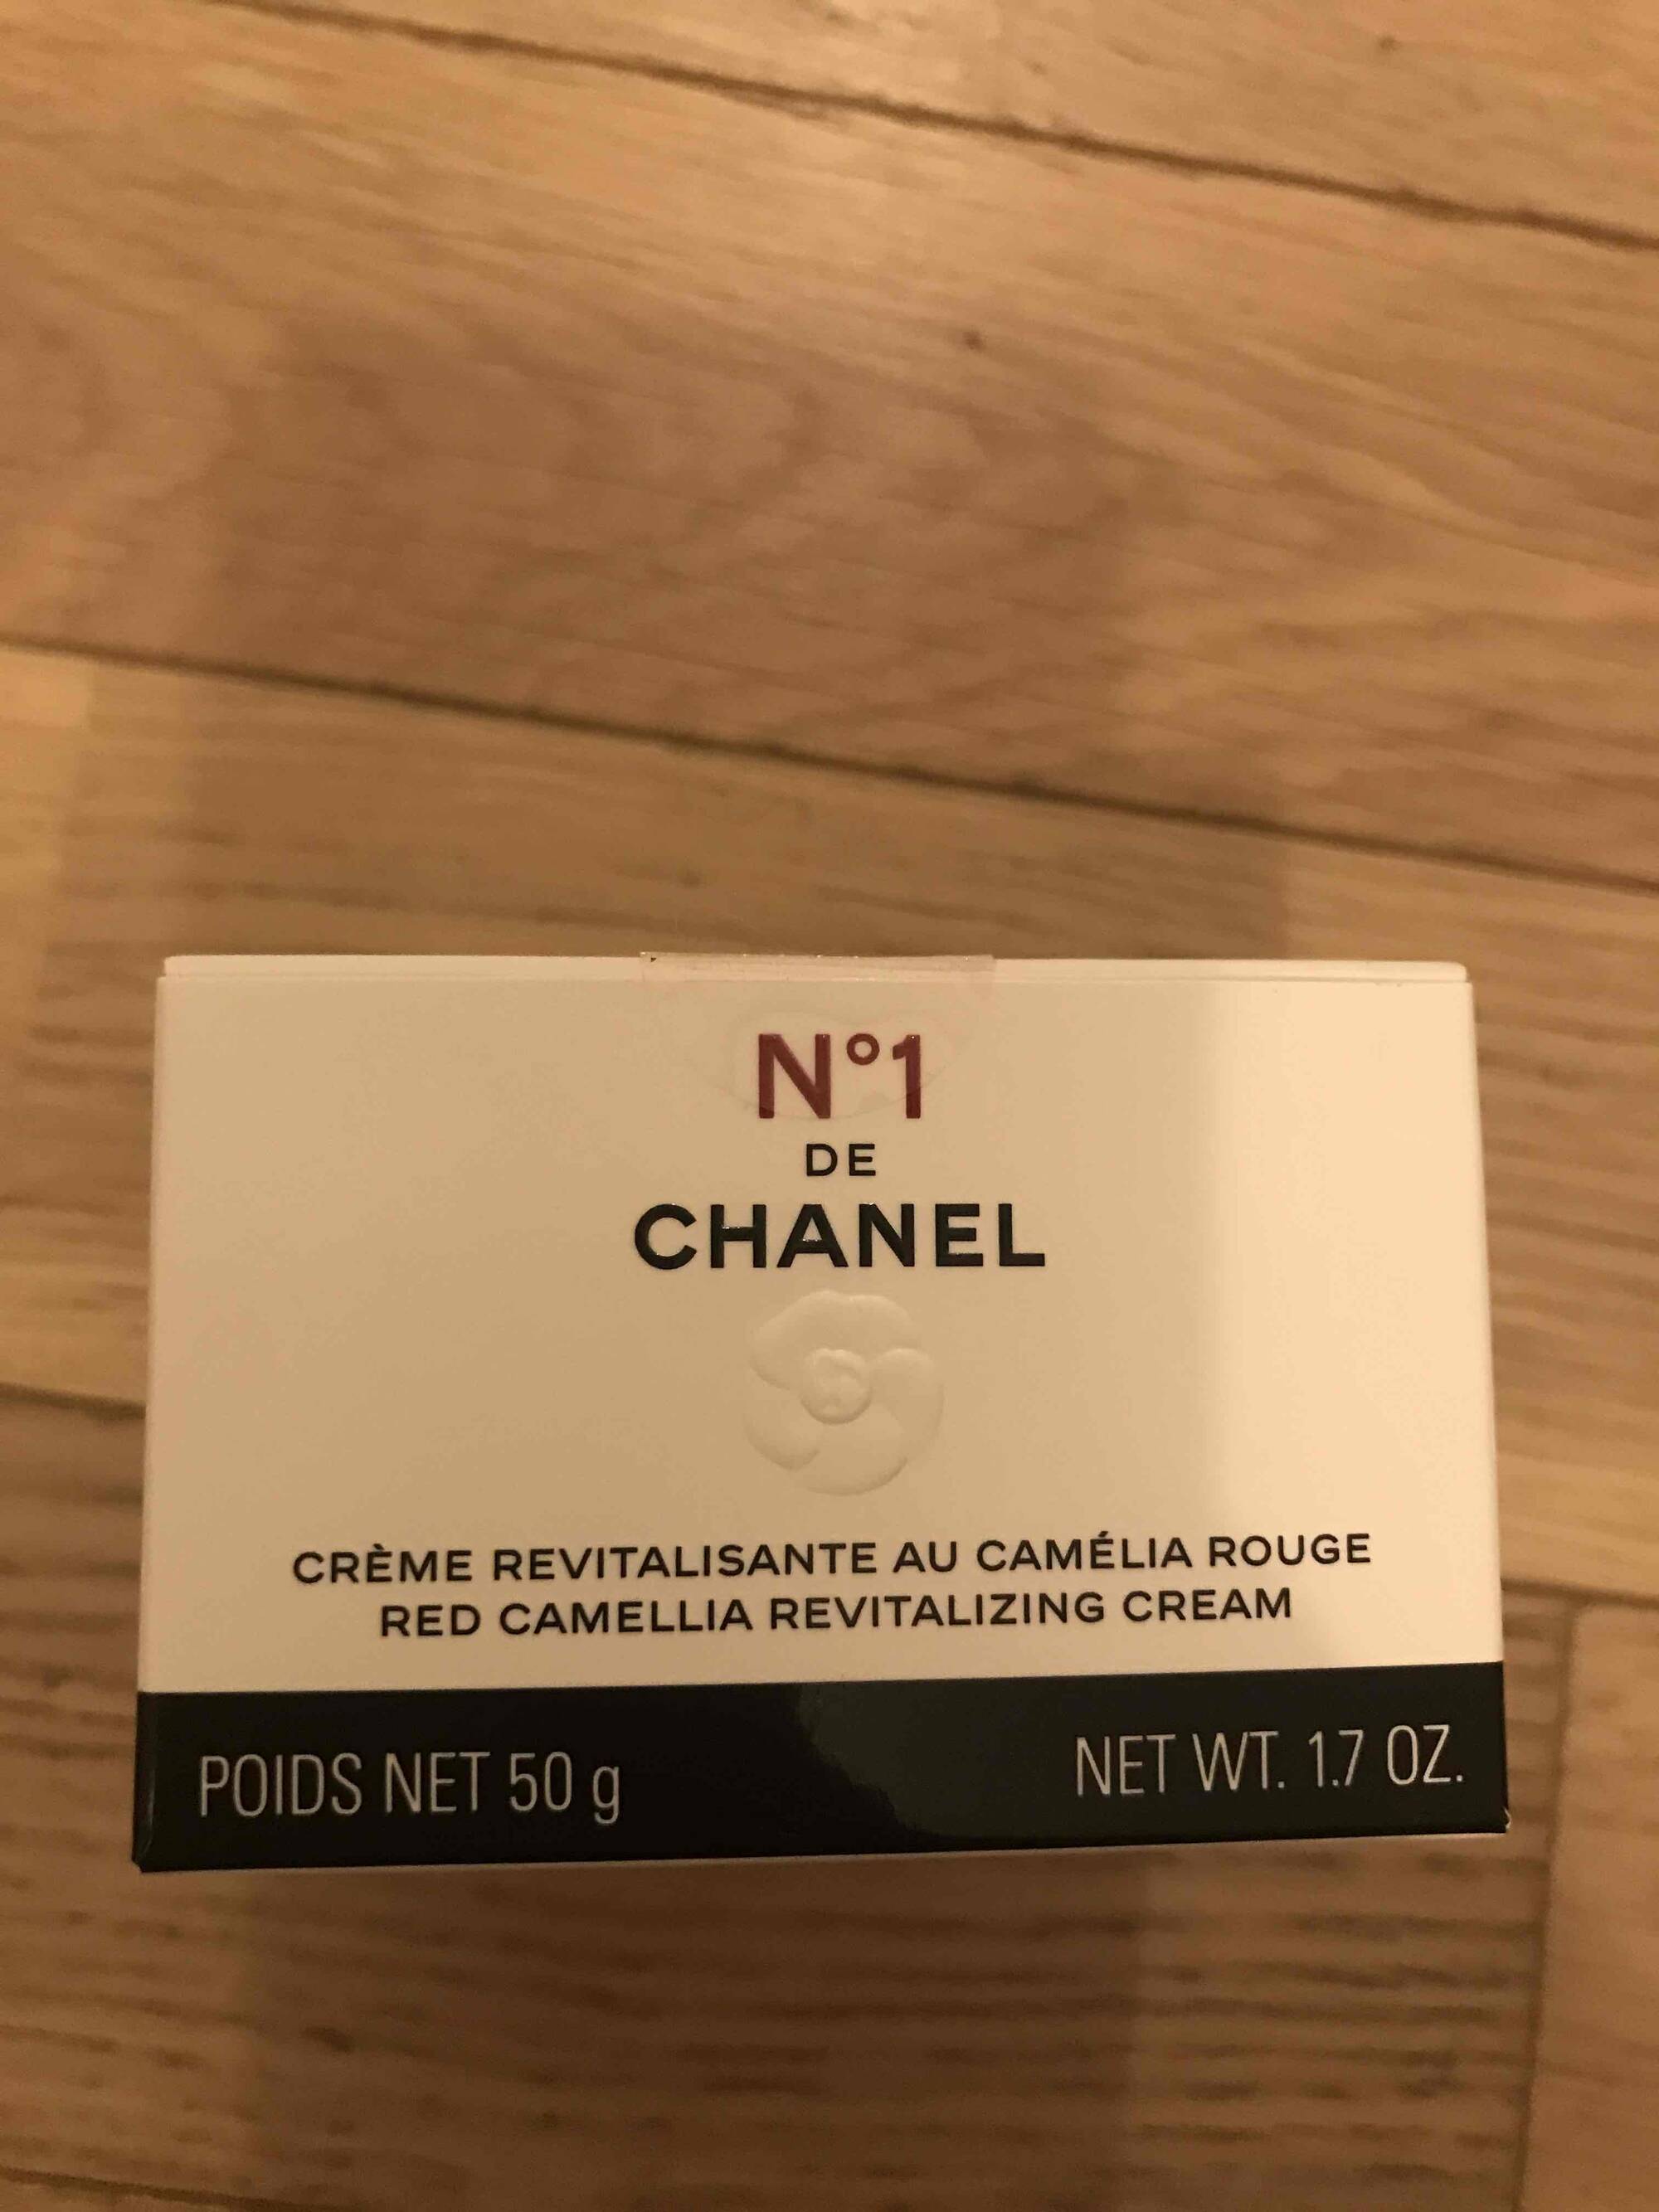 CHANEL - N°1 de Chanel - Crème revitalisante au camélia rouge